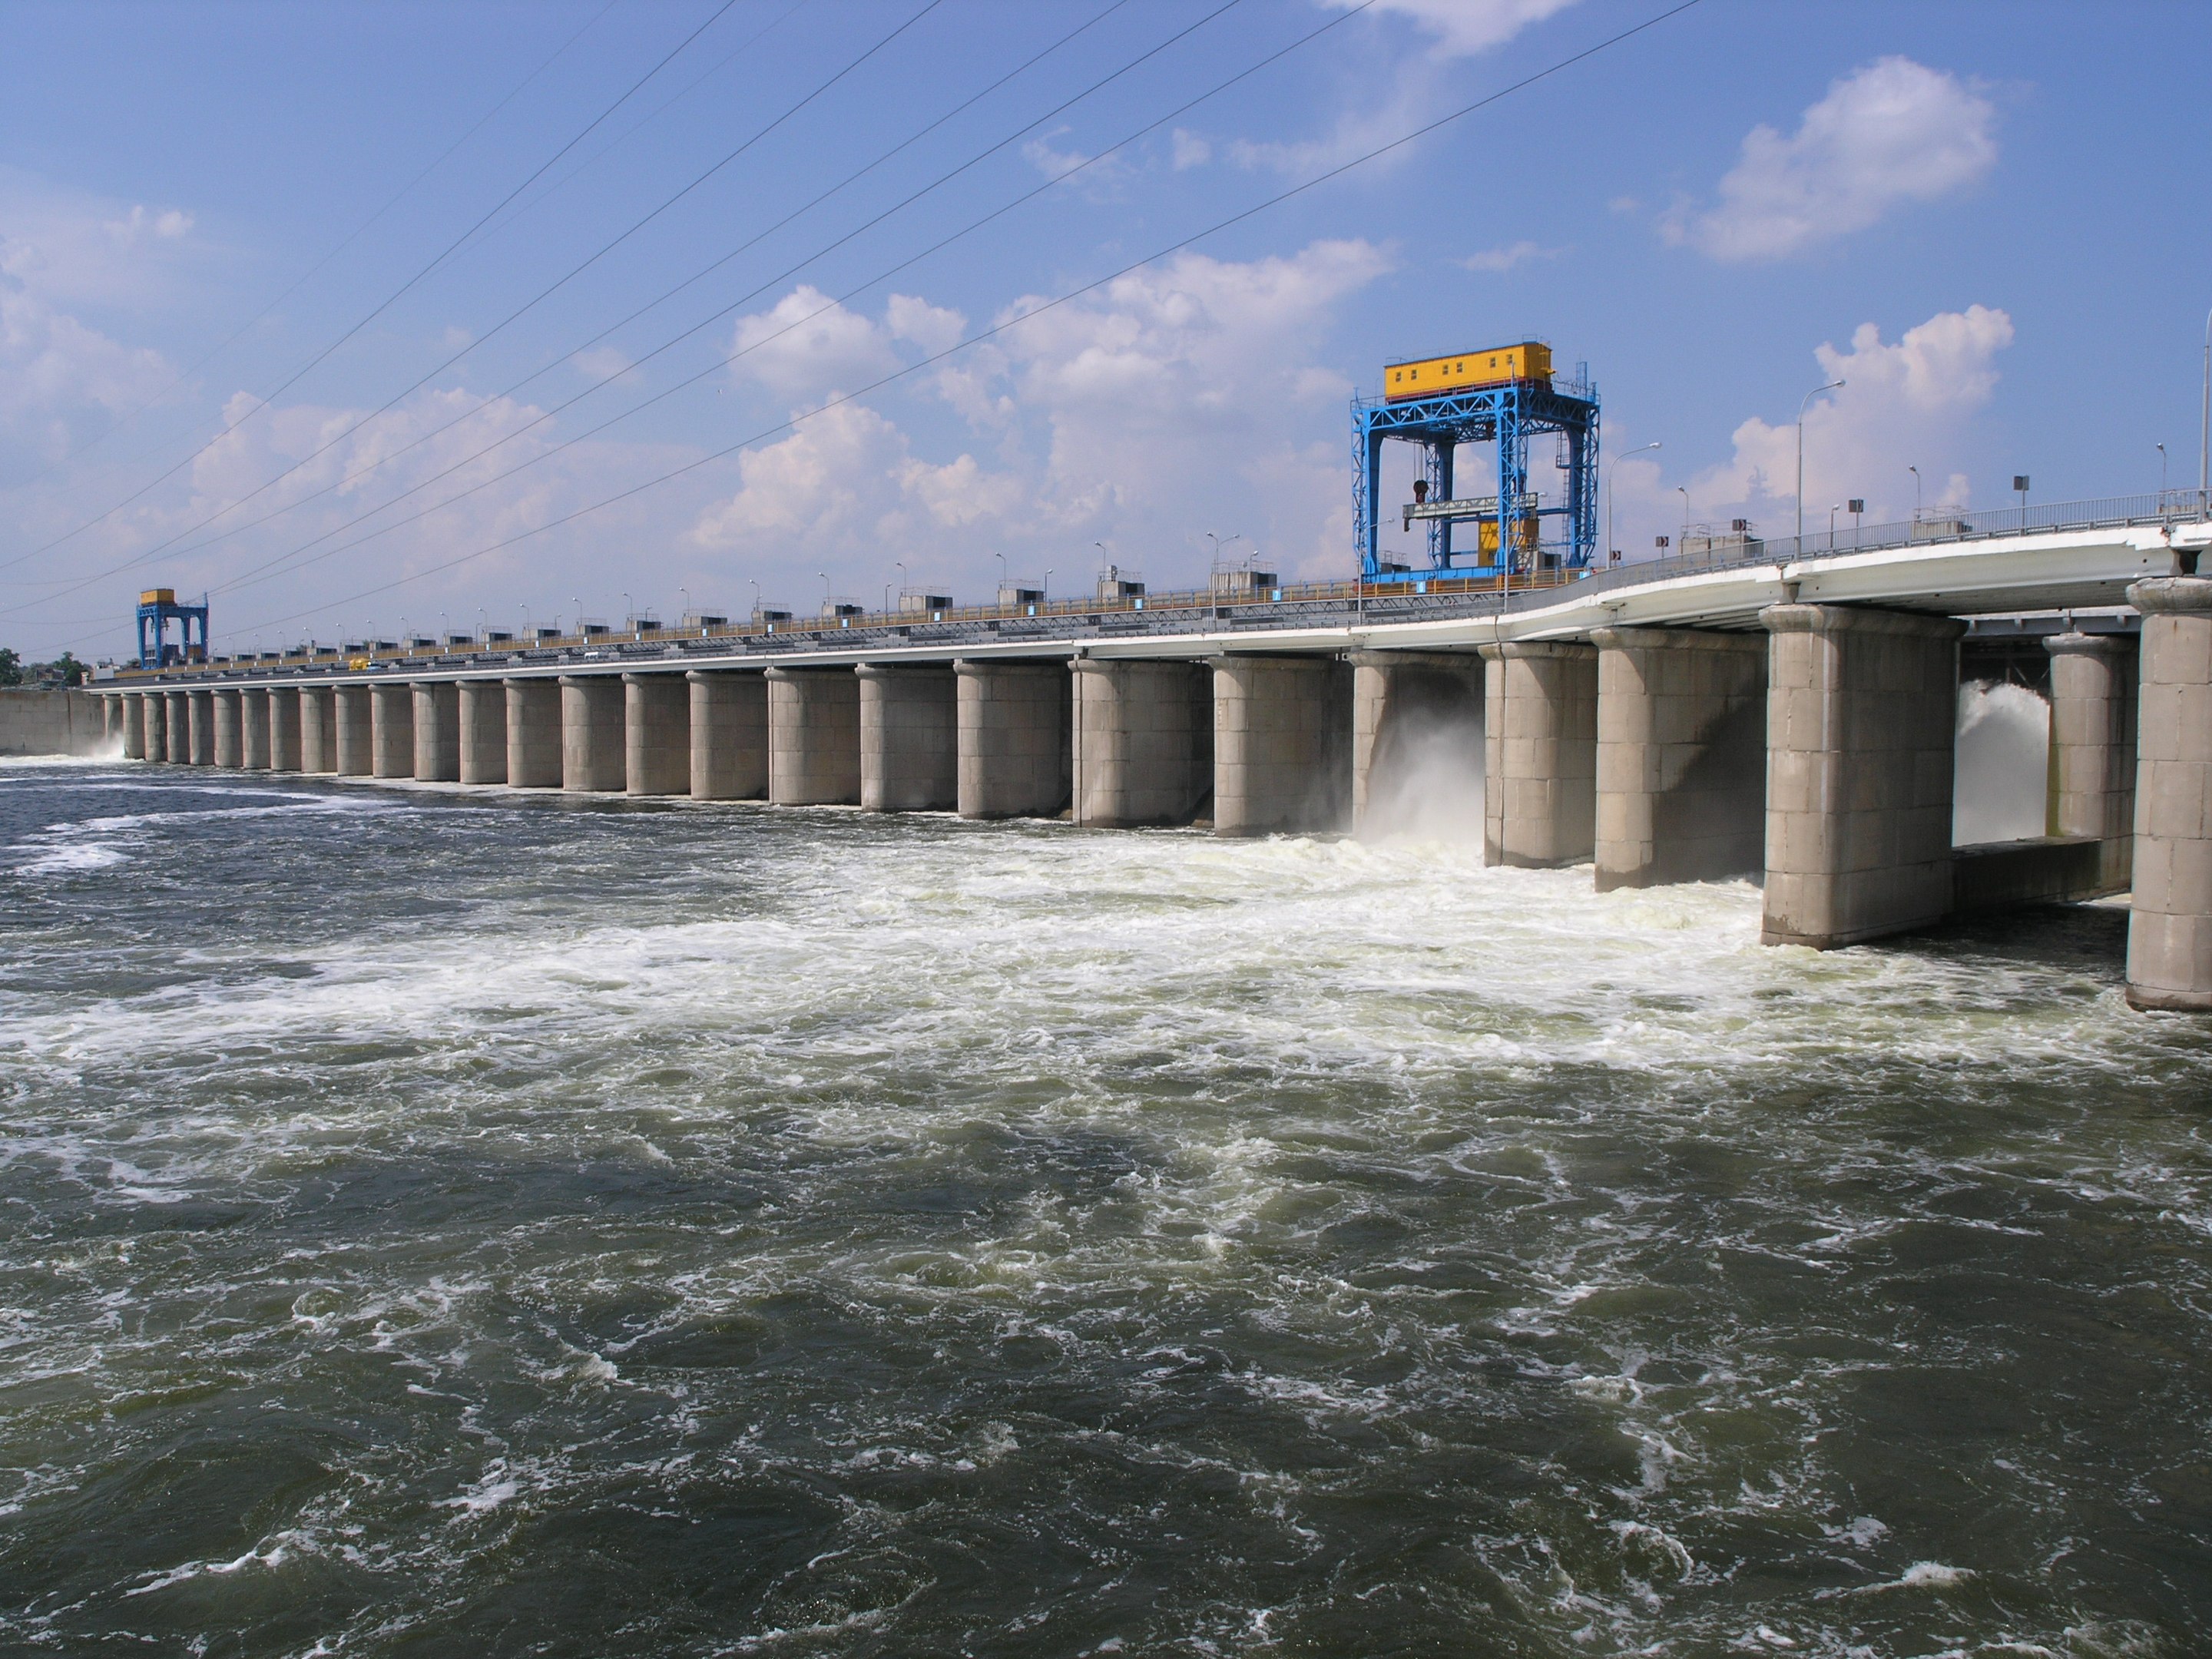 Kakhovka hydroelectric station, Nova Kakhovka, Kherson Oblast, Ukraine (c) Wikicommons